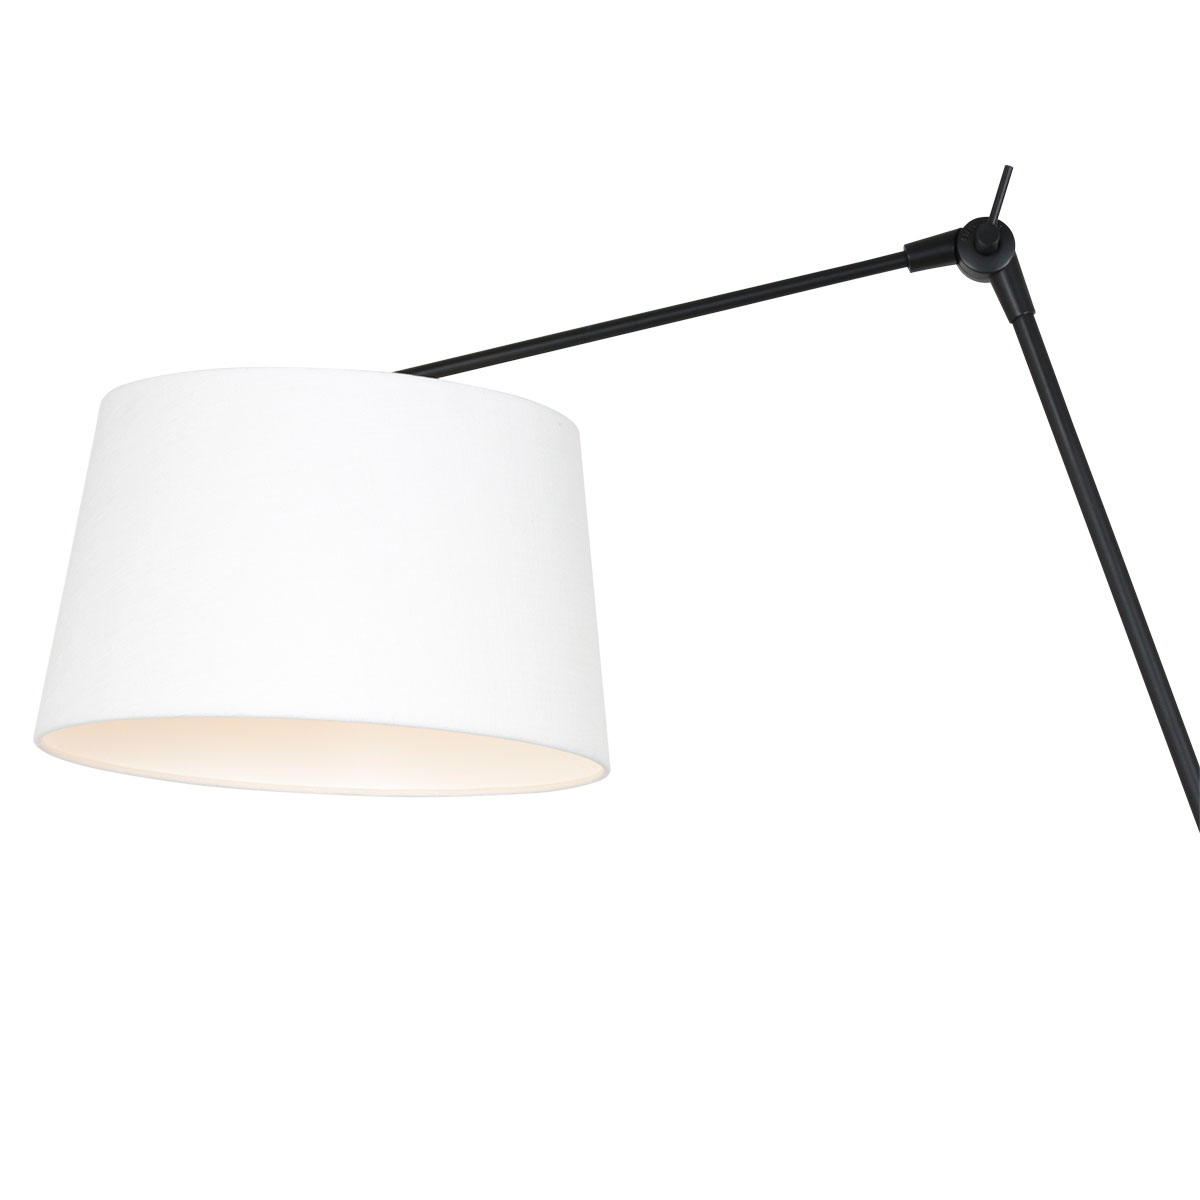 Steinhauer Wandlamp Prestige chic | 1 lichts | E27 |Ø 30 cm | wit&zwart